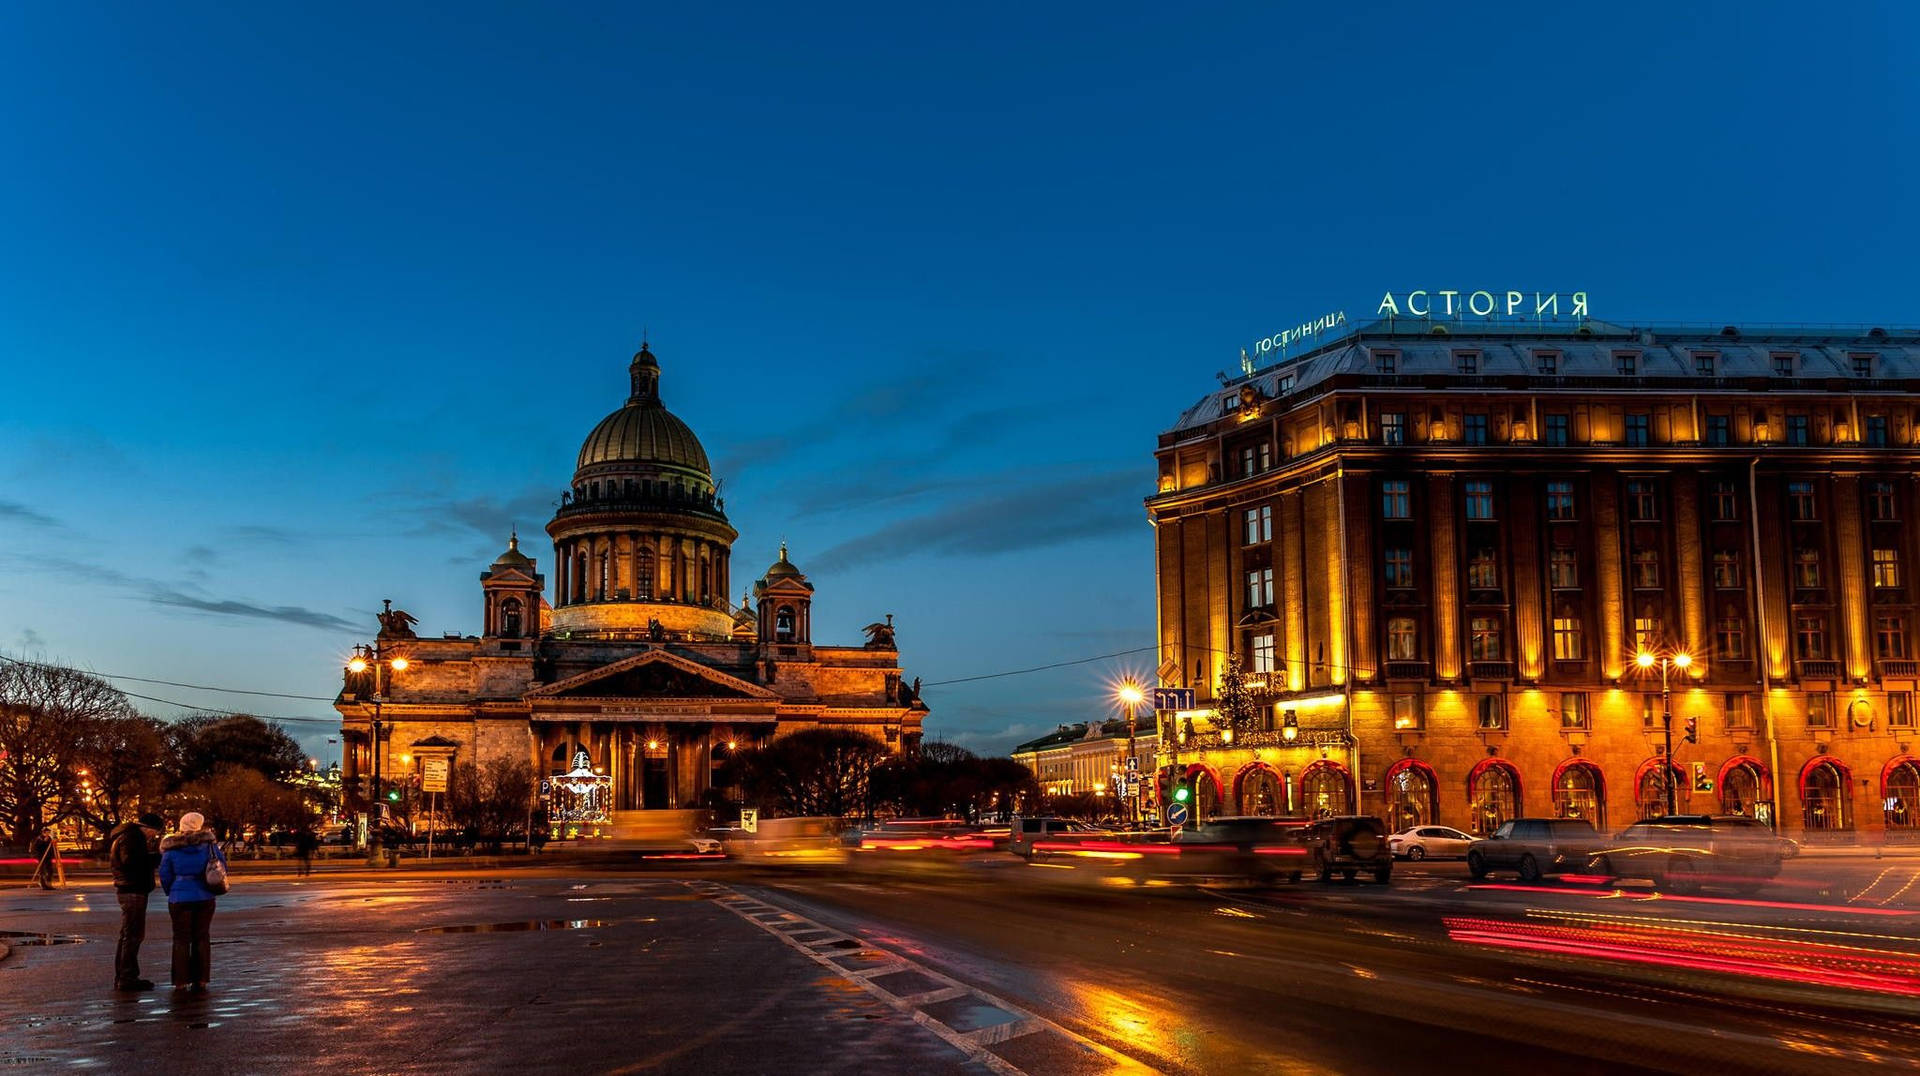 Astoriya Building In St. Petersburg Wallpaper